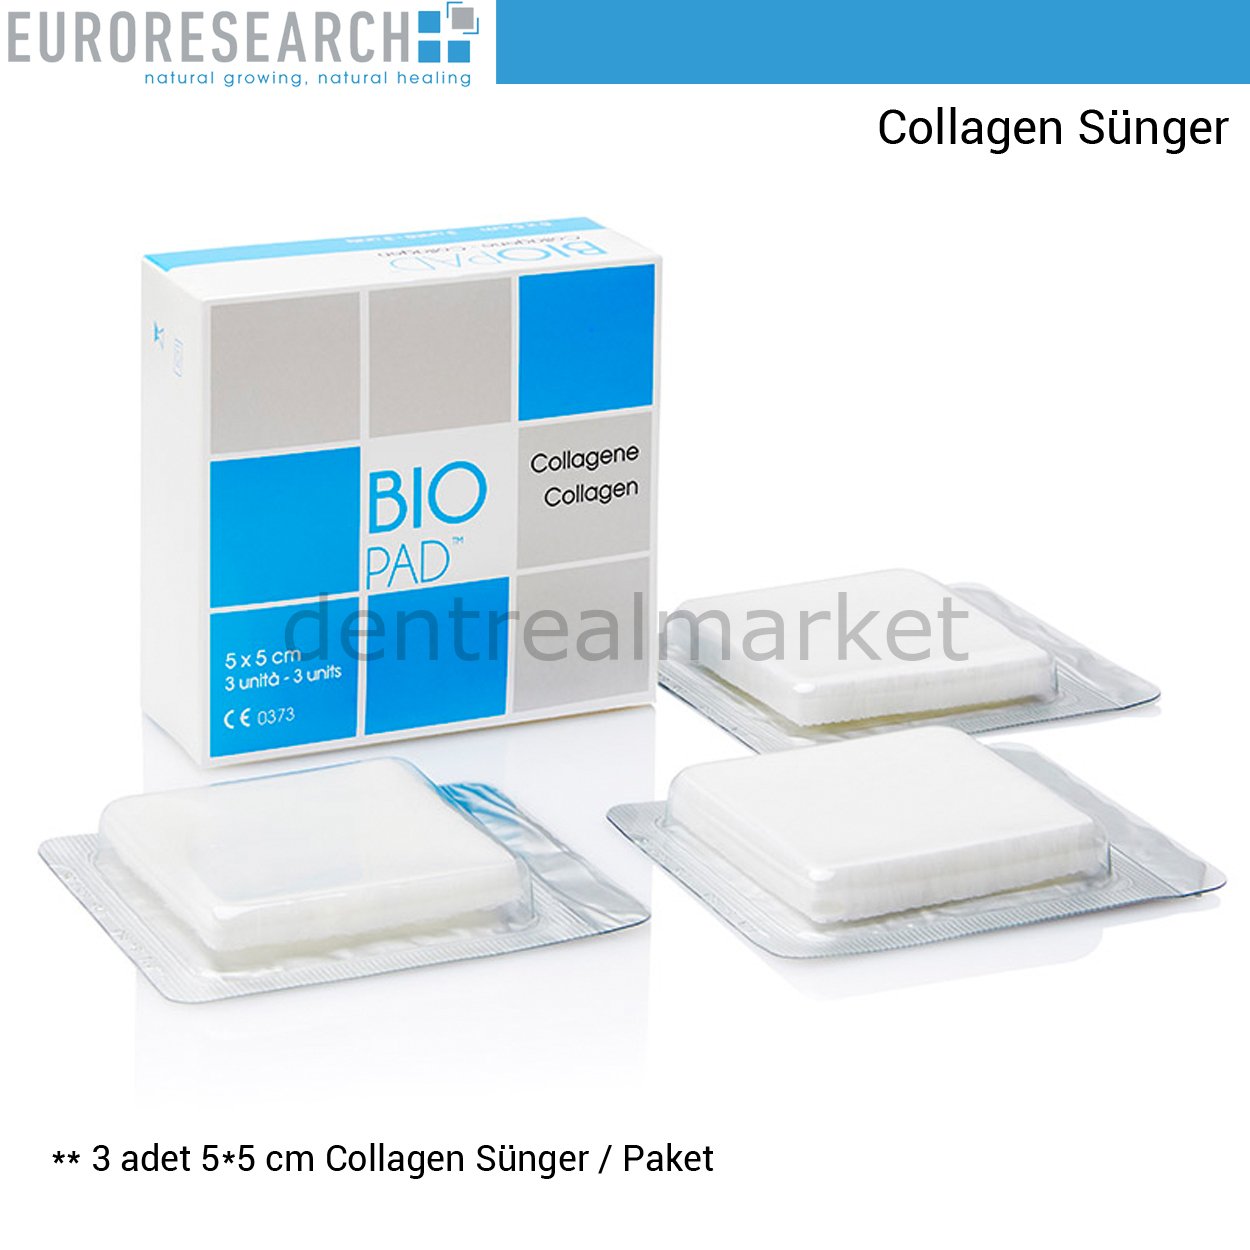 Biopad Collagen Sünger Cone - 5*5 cm